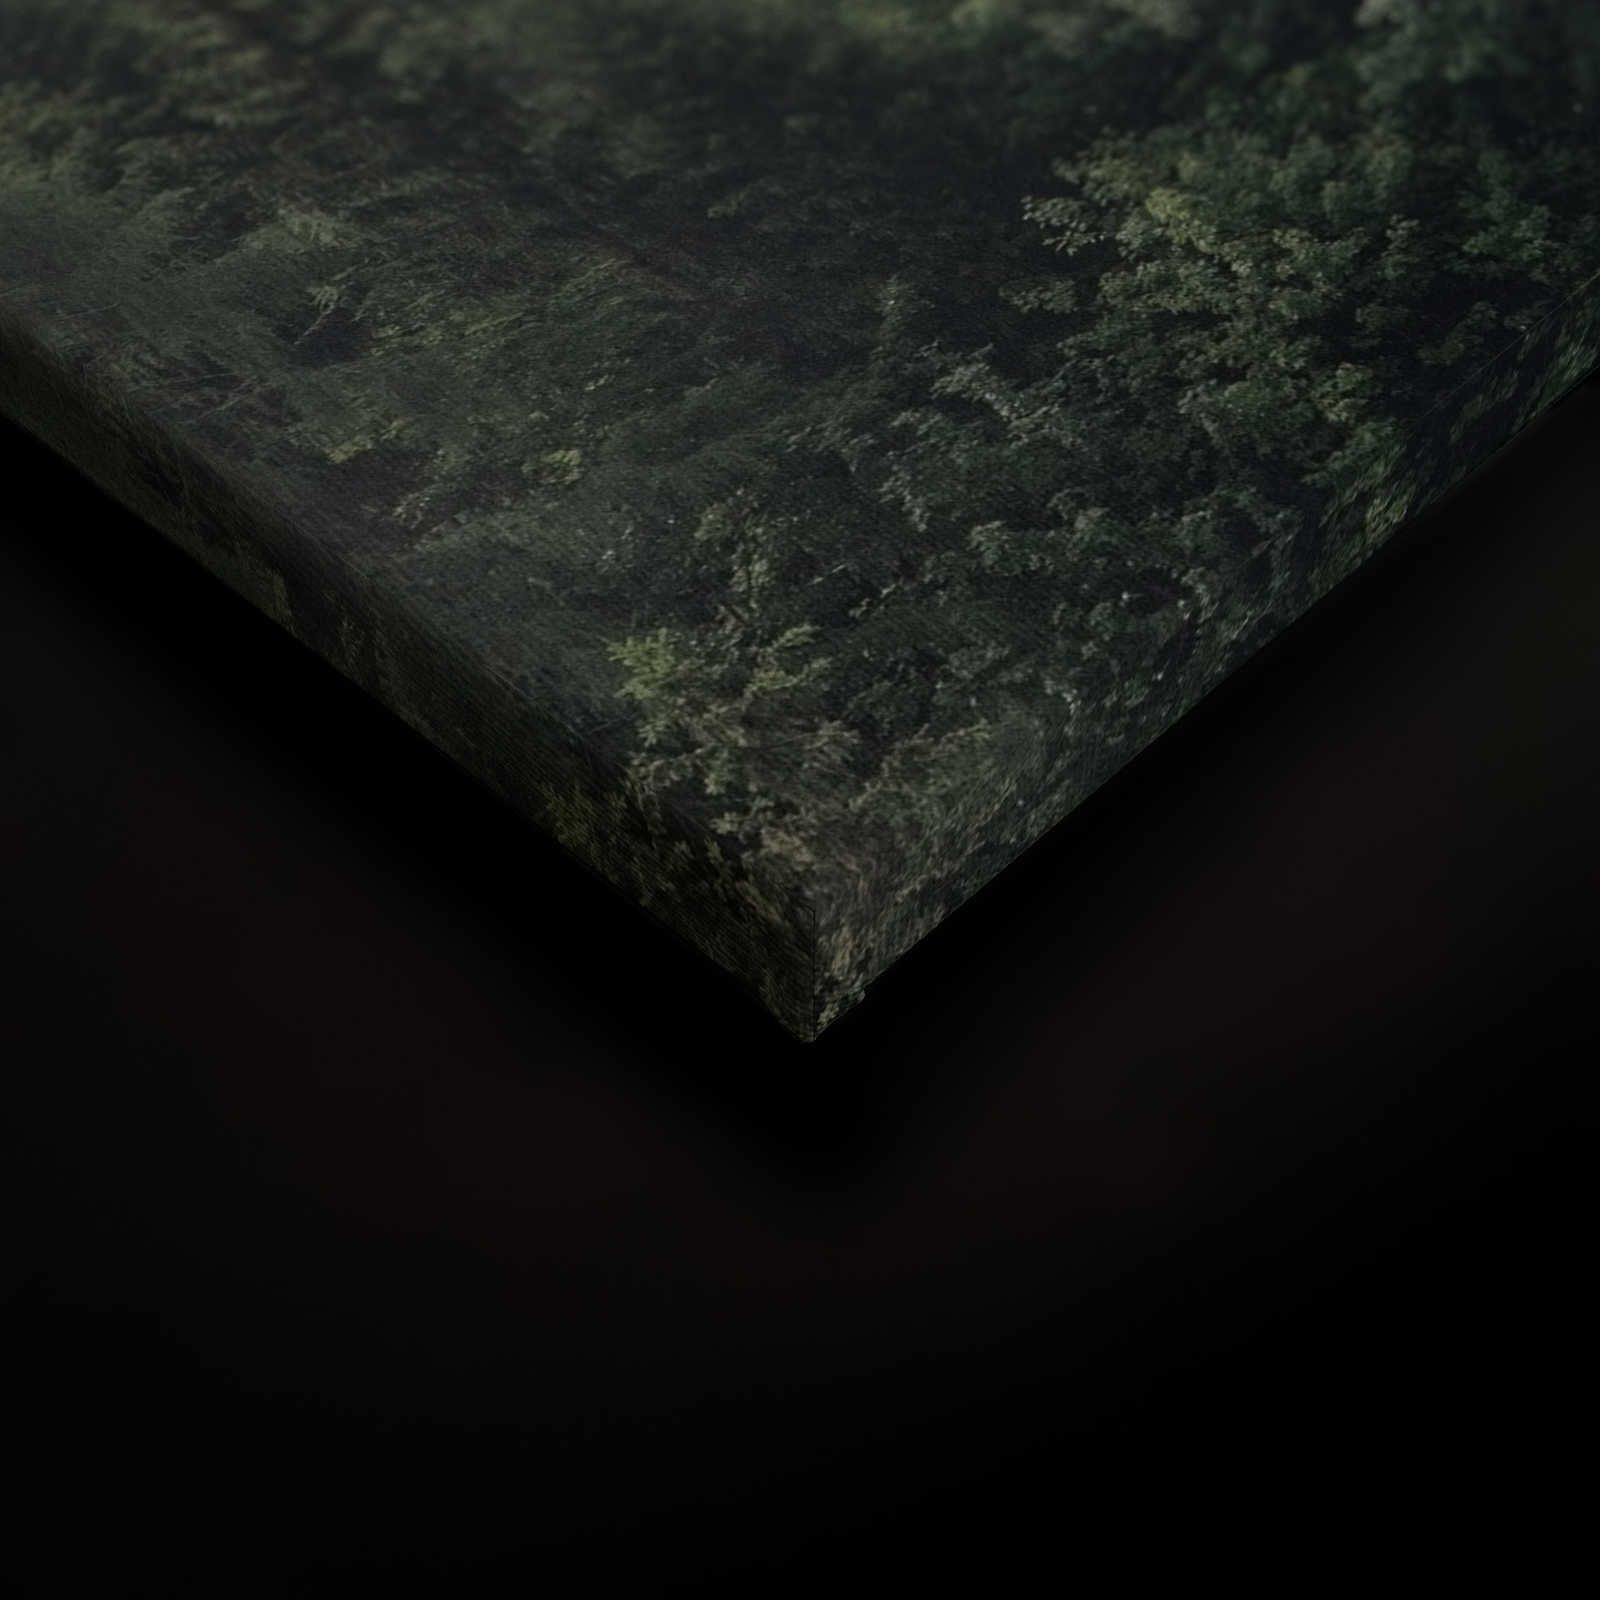             Canvas met bos van boven op een mistige dag - 0.90 m x 0.60 m
        